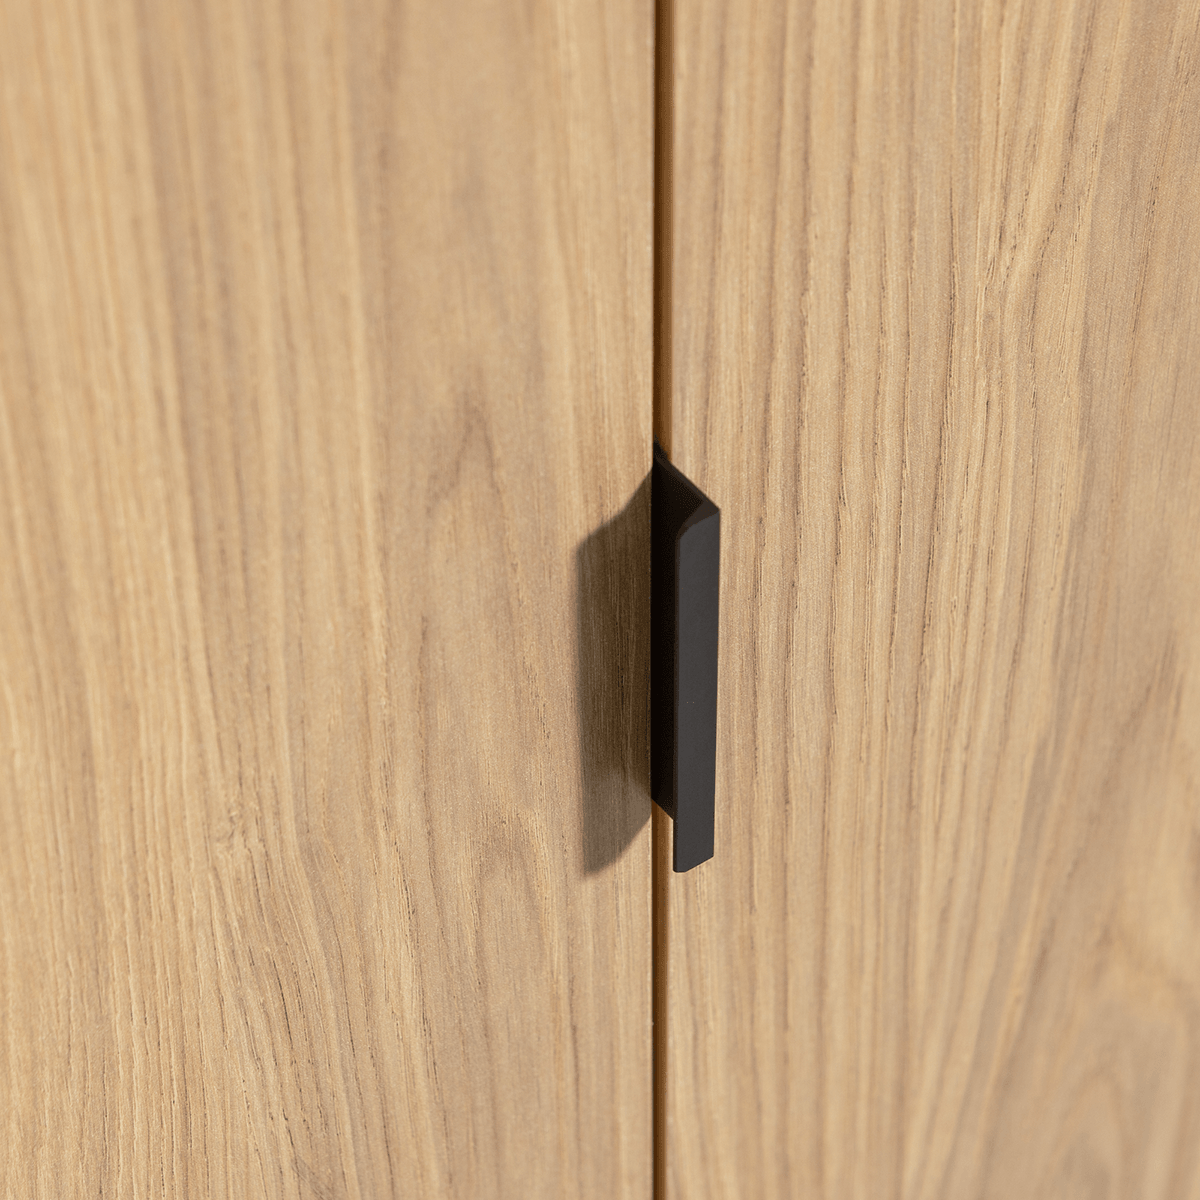 Silas Oak 2 Doors Cabinet - WOO .Design